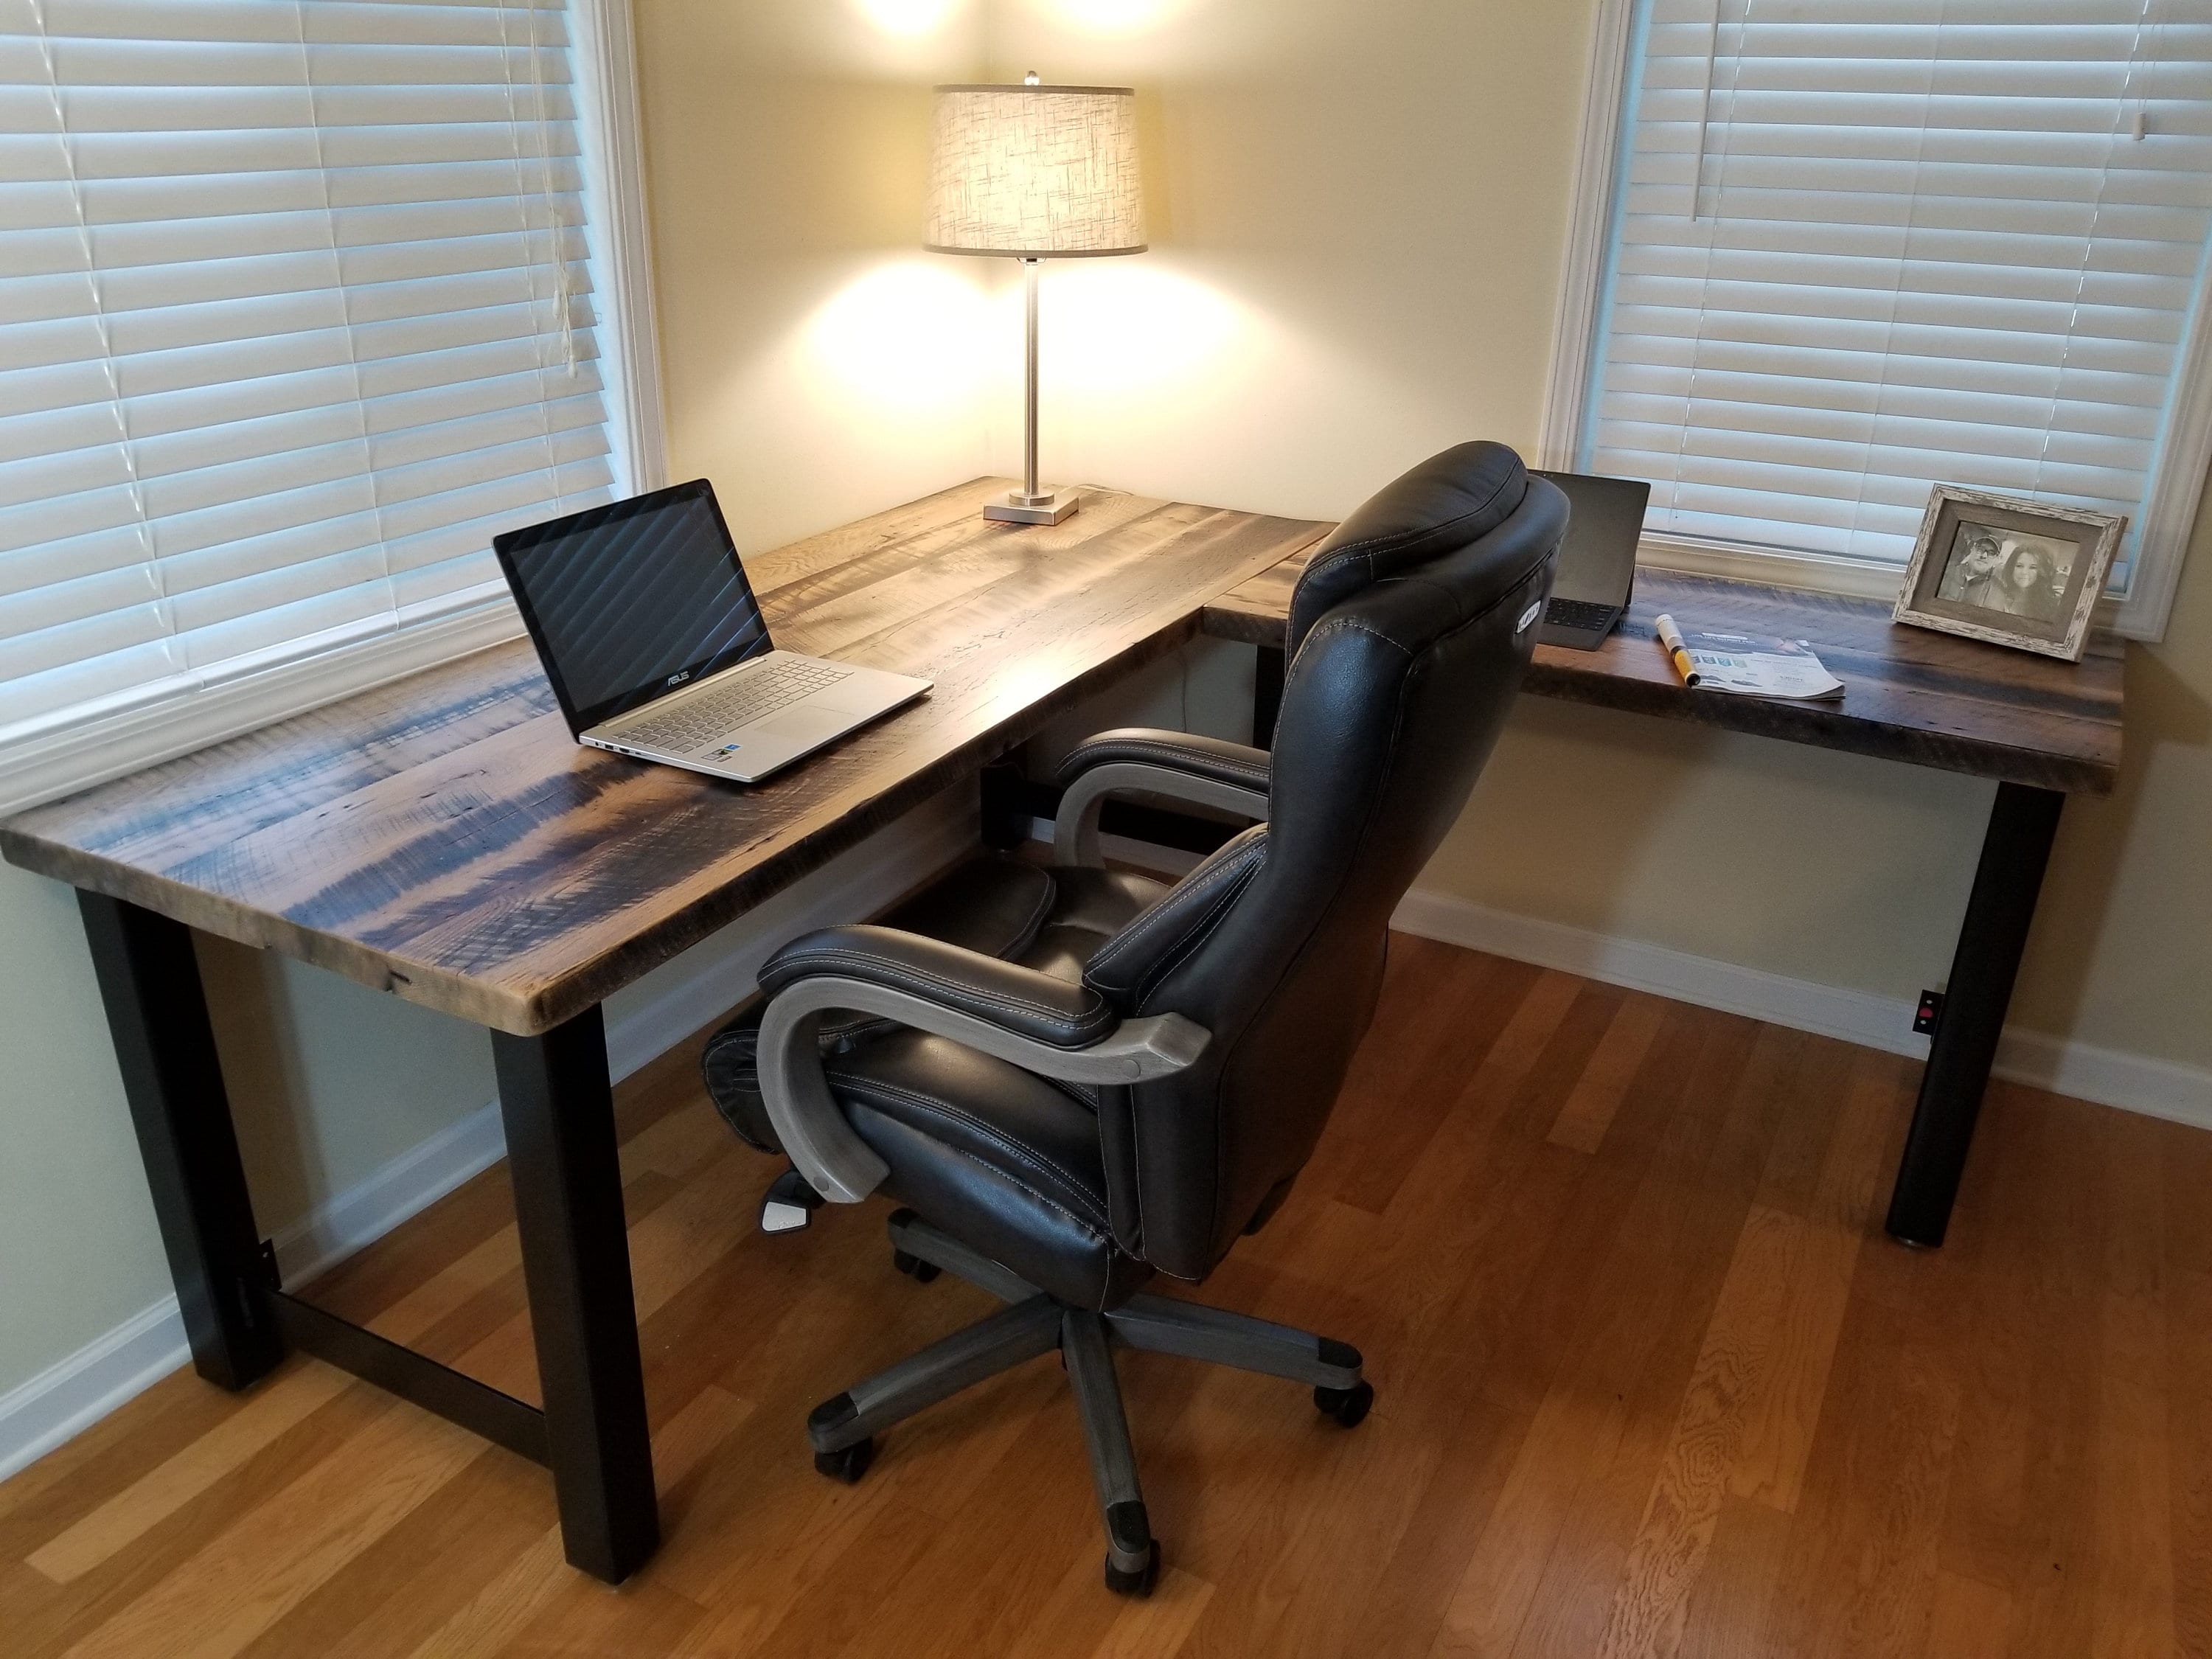 Reclaimed computer desk L-shape desk barnwood office desk | Etsy